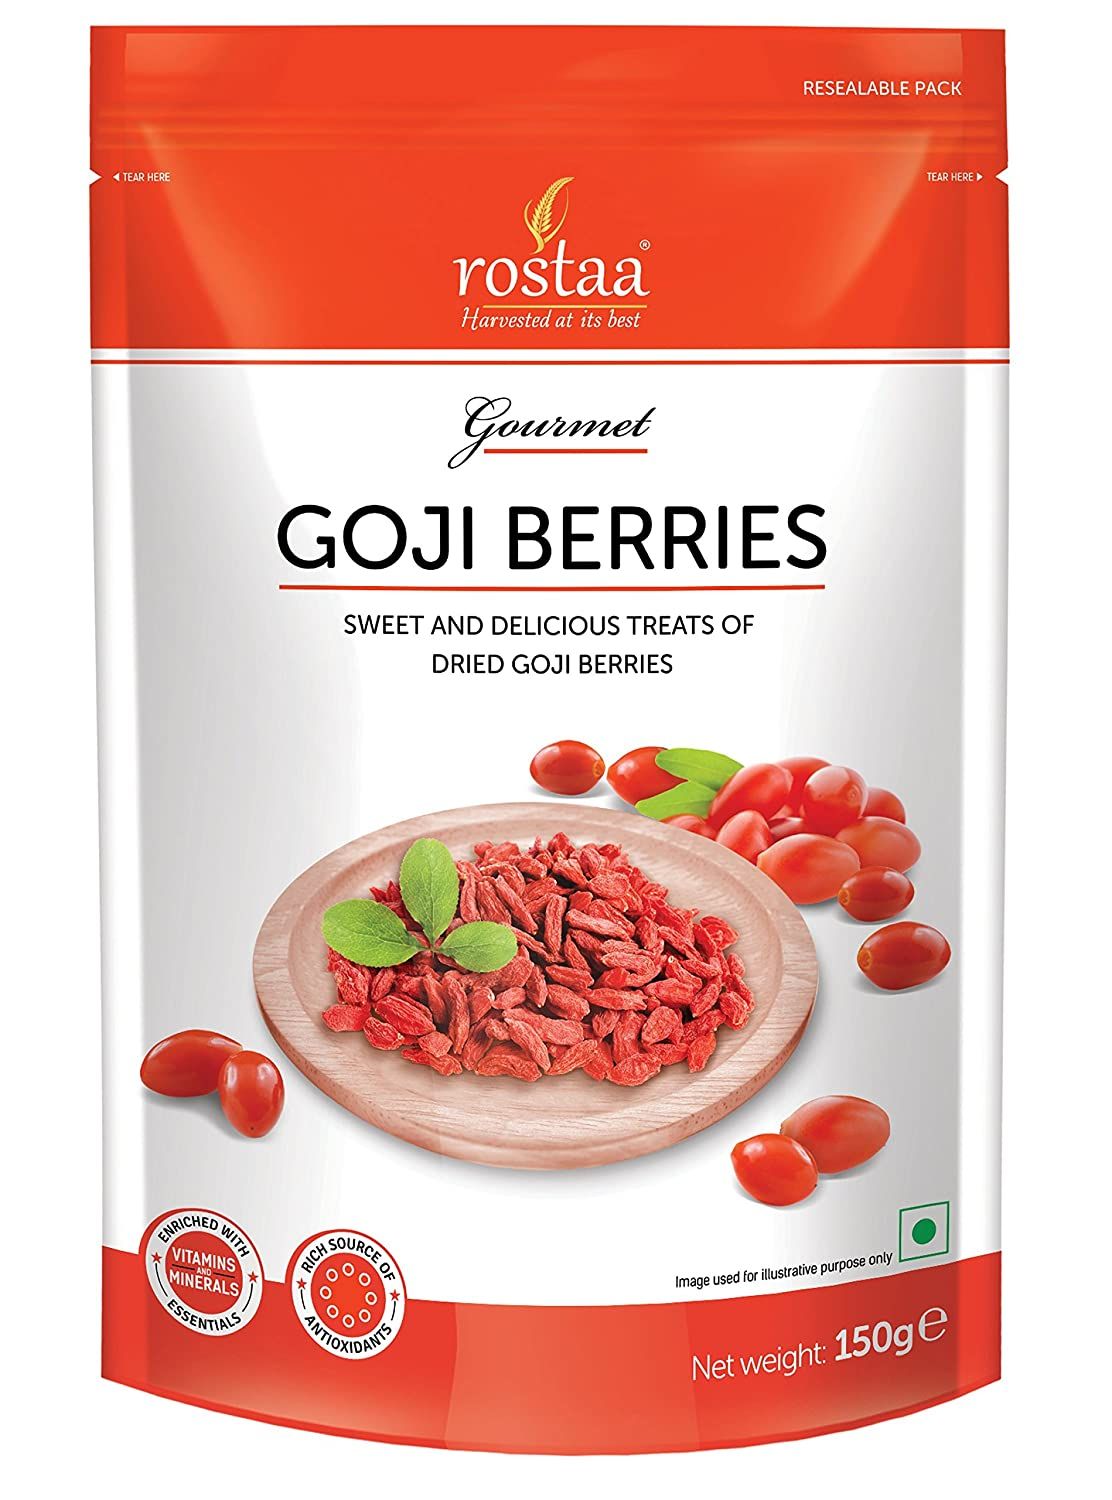 Rostaa Goji Berries Image